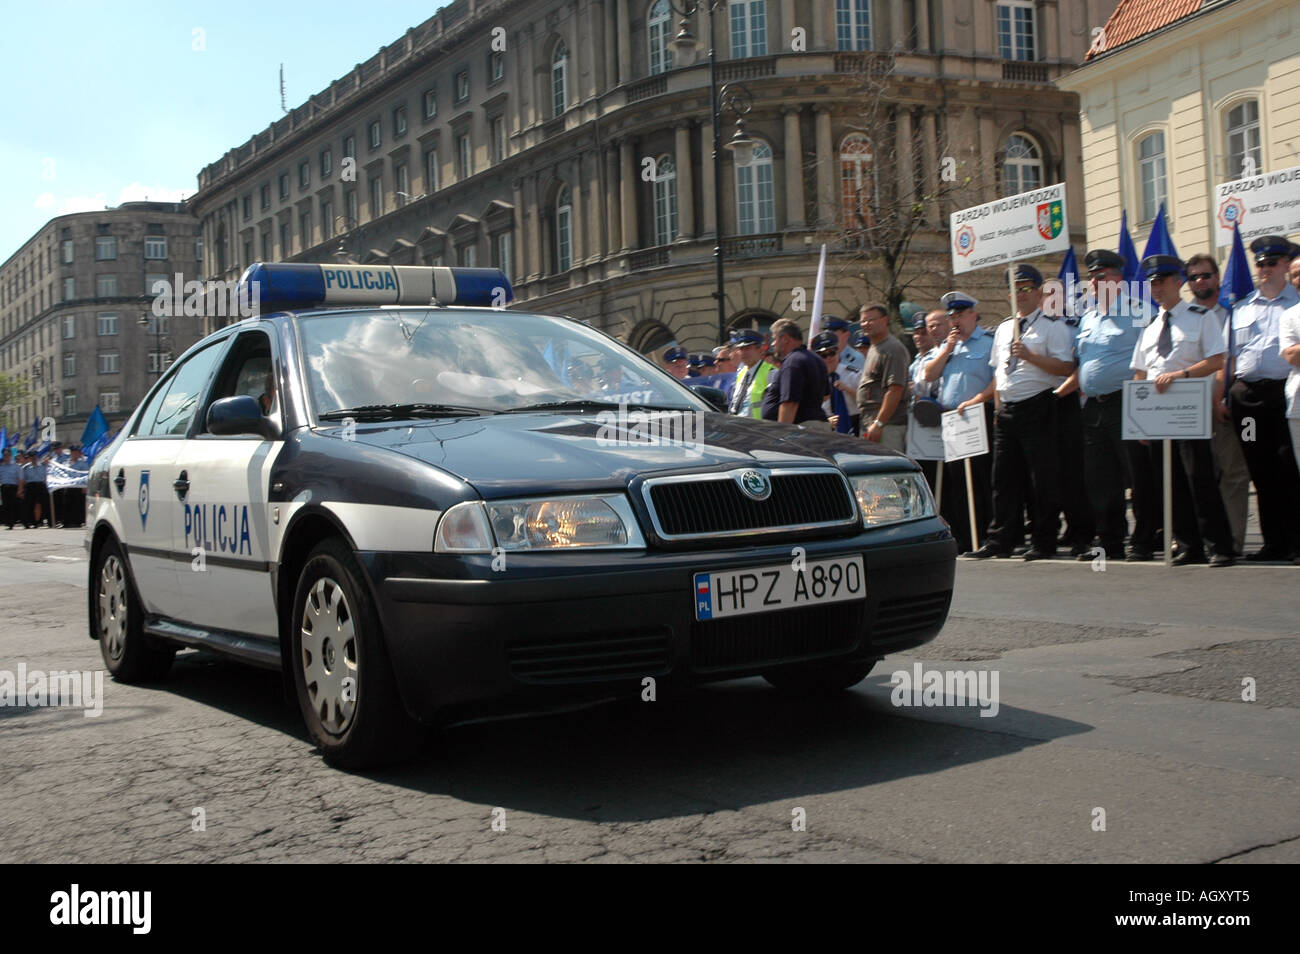 Skoda Octavia police car in Warsaw, Poland Stock Photo - Alamy